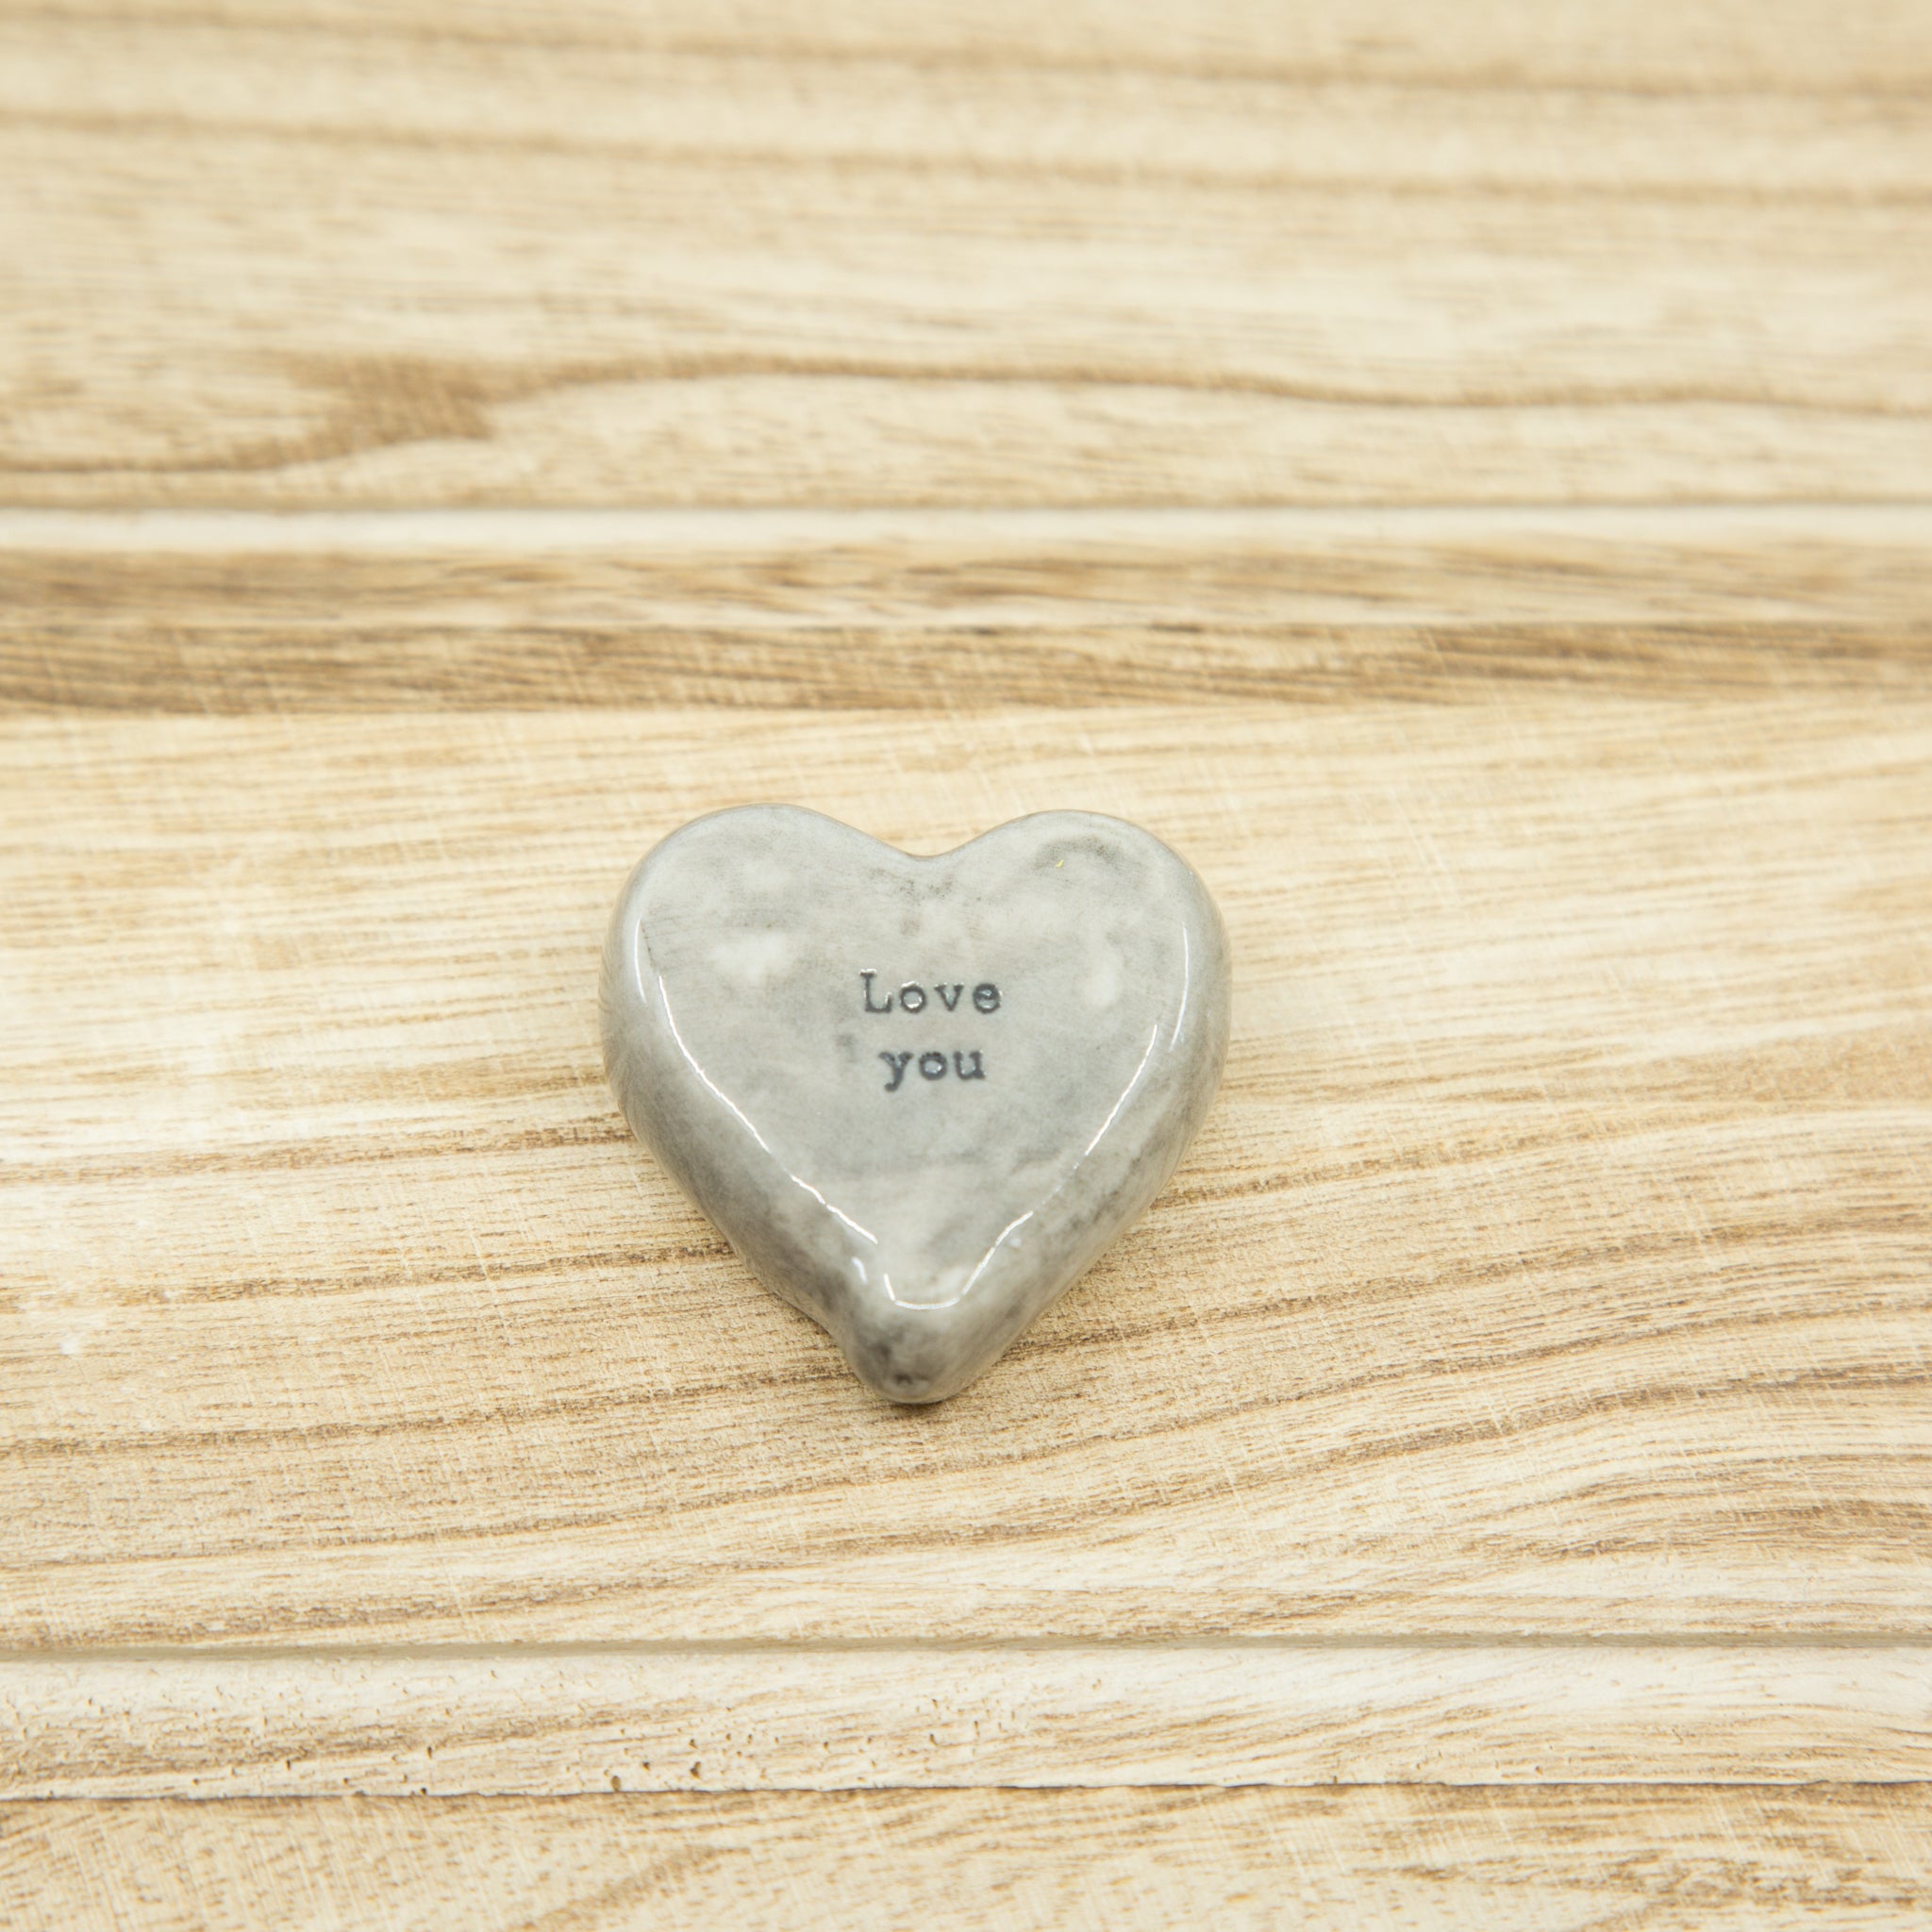 Love you - Porcelain Heart Pebble